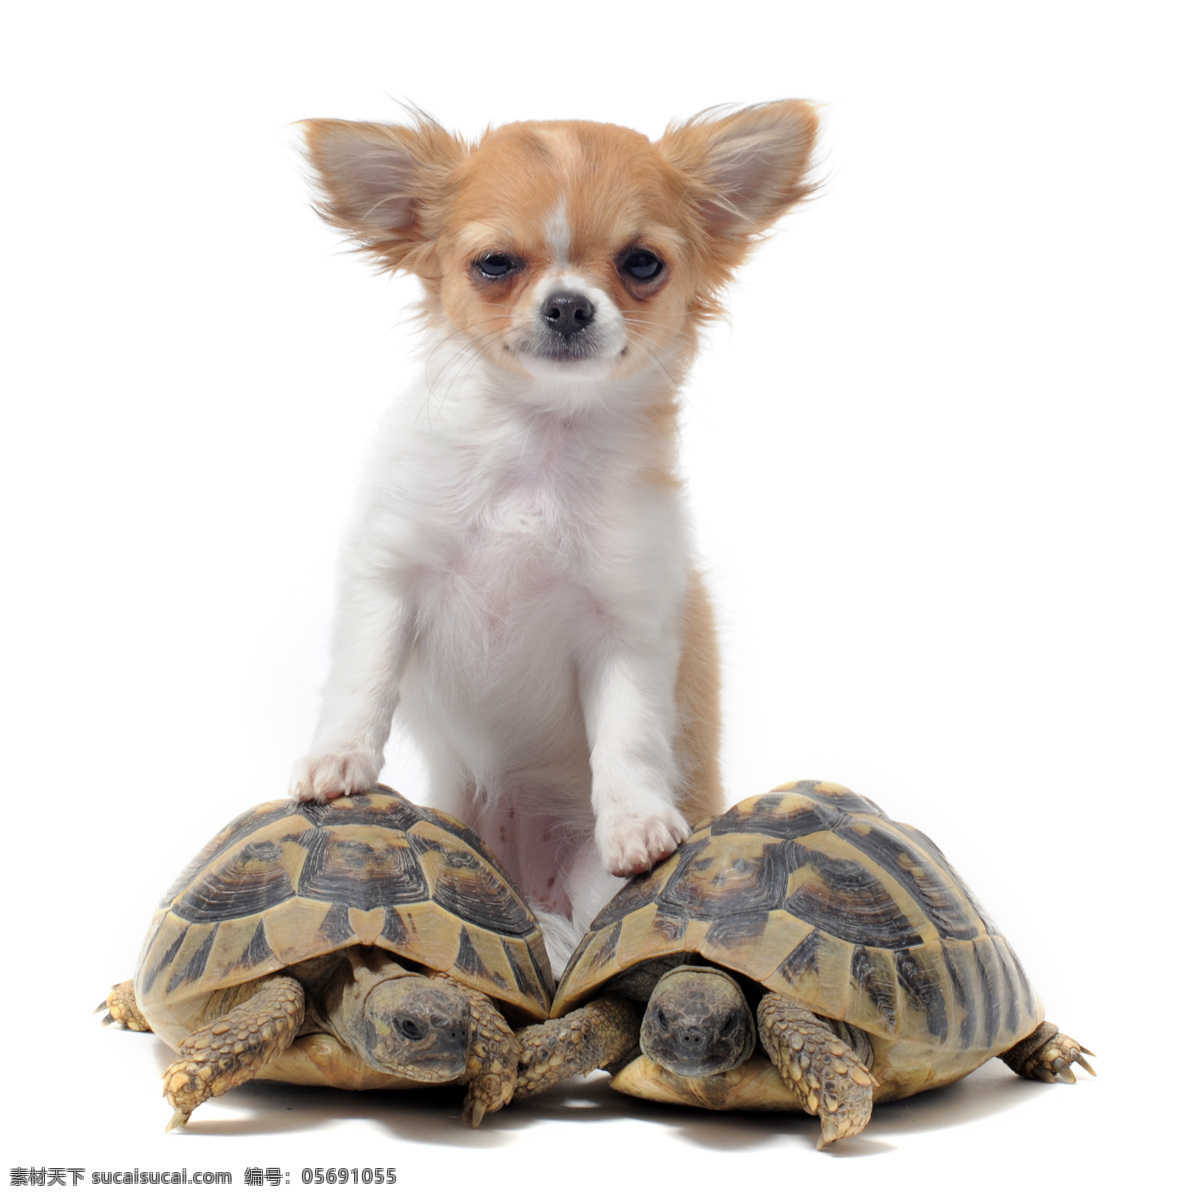 小狗 乌龟 动物 动物世界 摄影图 宠物 名贵犬种 狗狗图片 生物世界